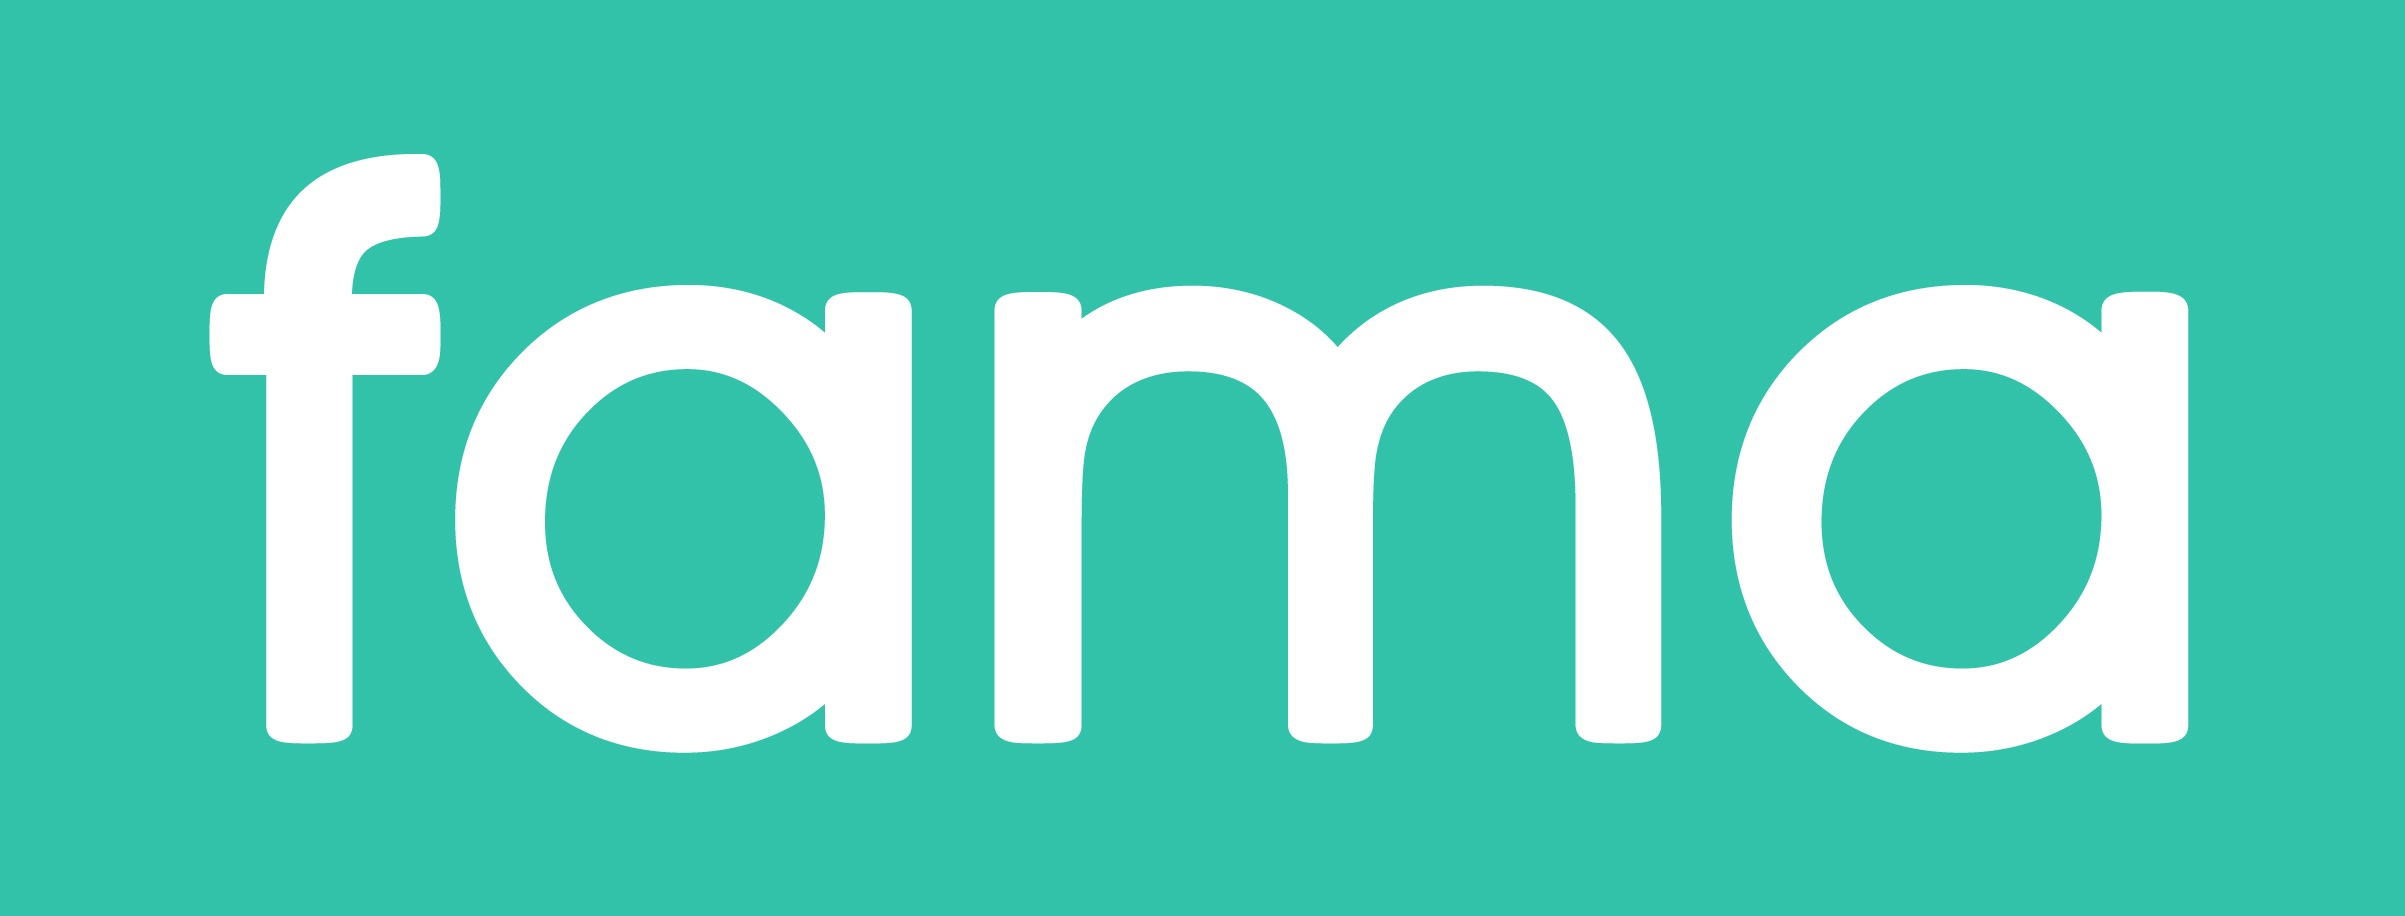 Logo Fama